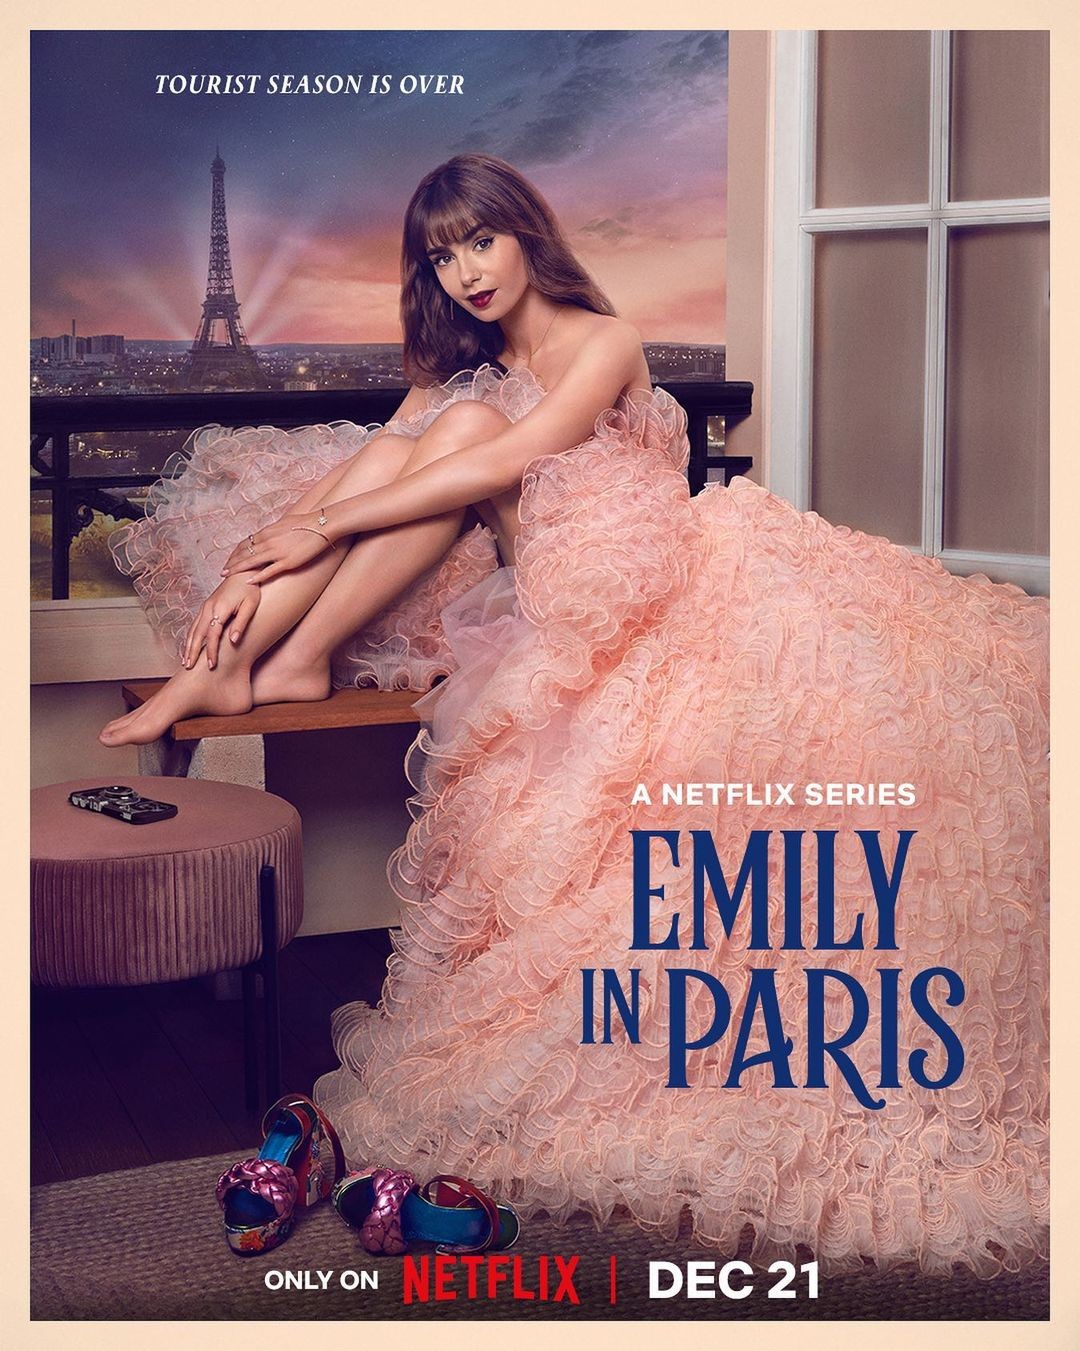 Emily In Paris season 2 ending: A recap of what happened